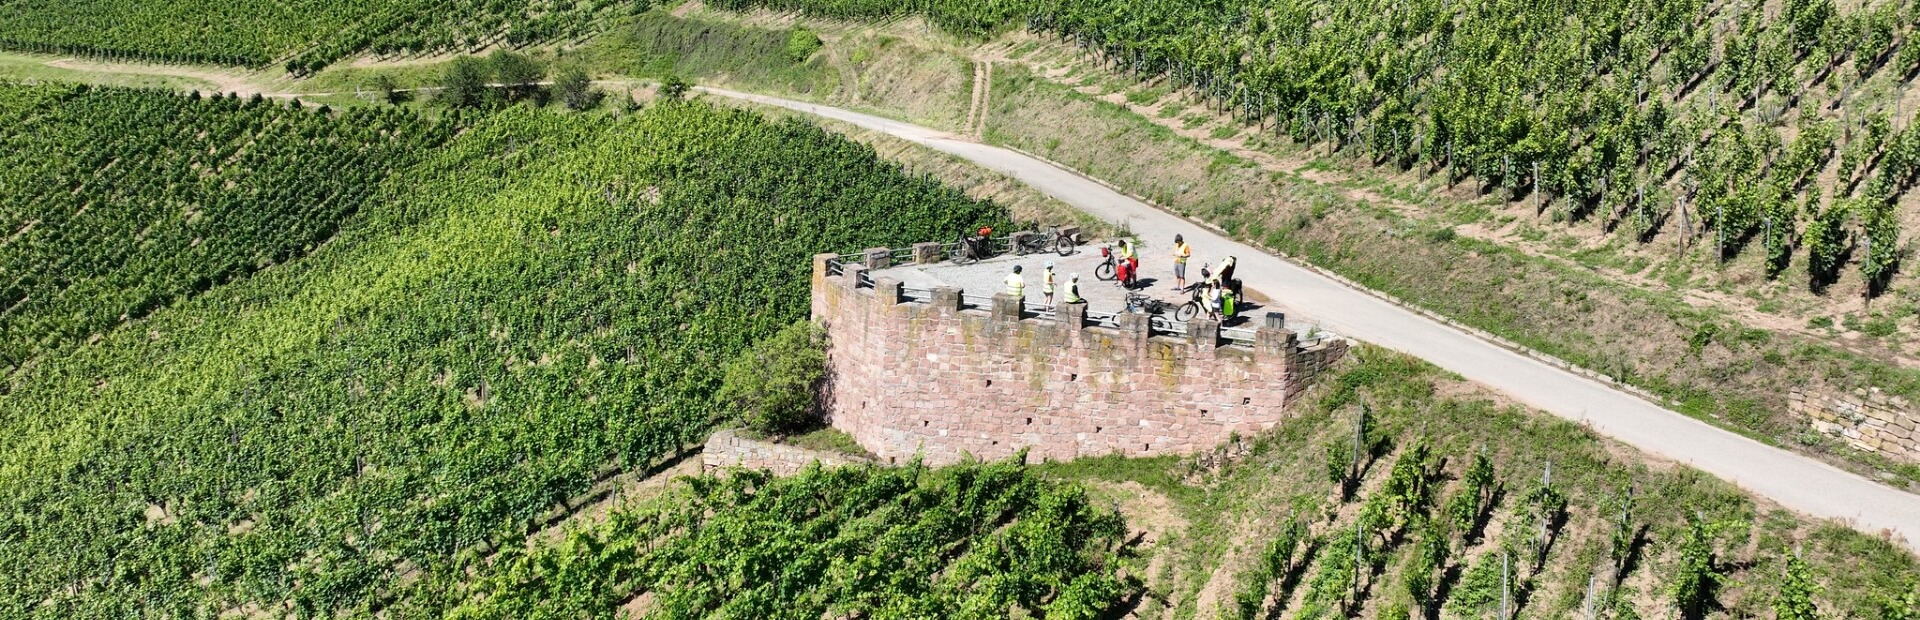 Pendant votre séjour au camping le Médiéval, partez à la découverte des nombreux itinéraires cyclables que compte l'Alsace